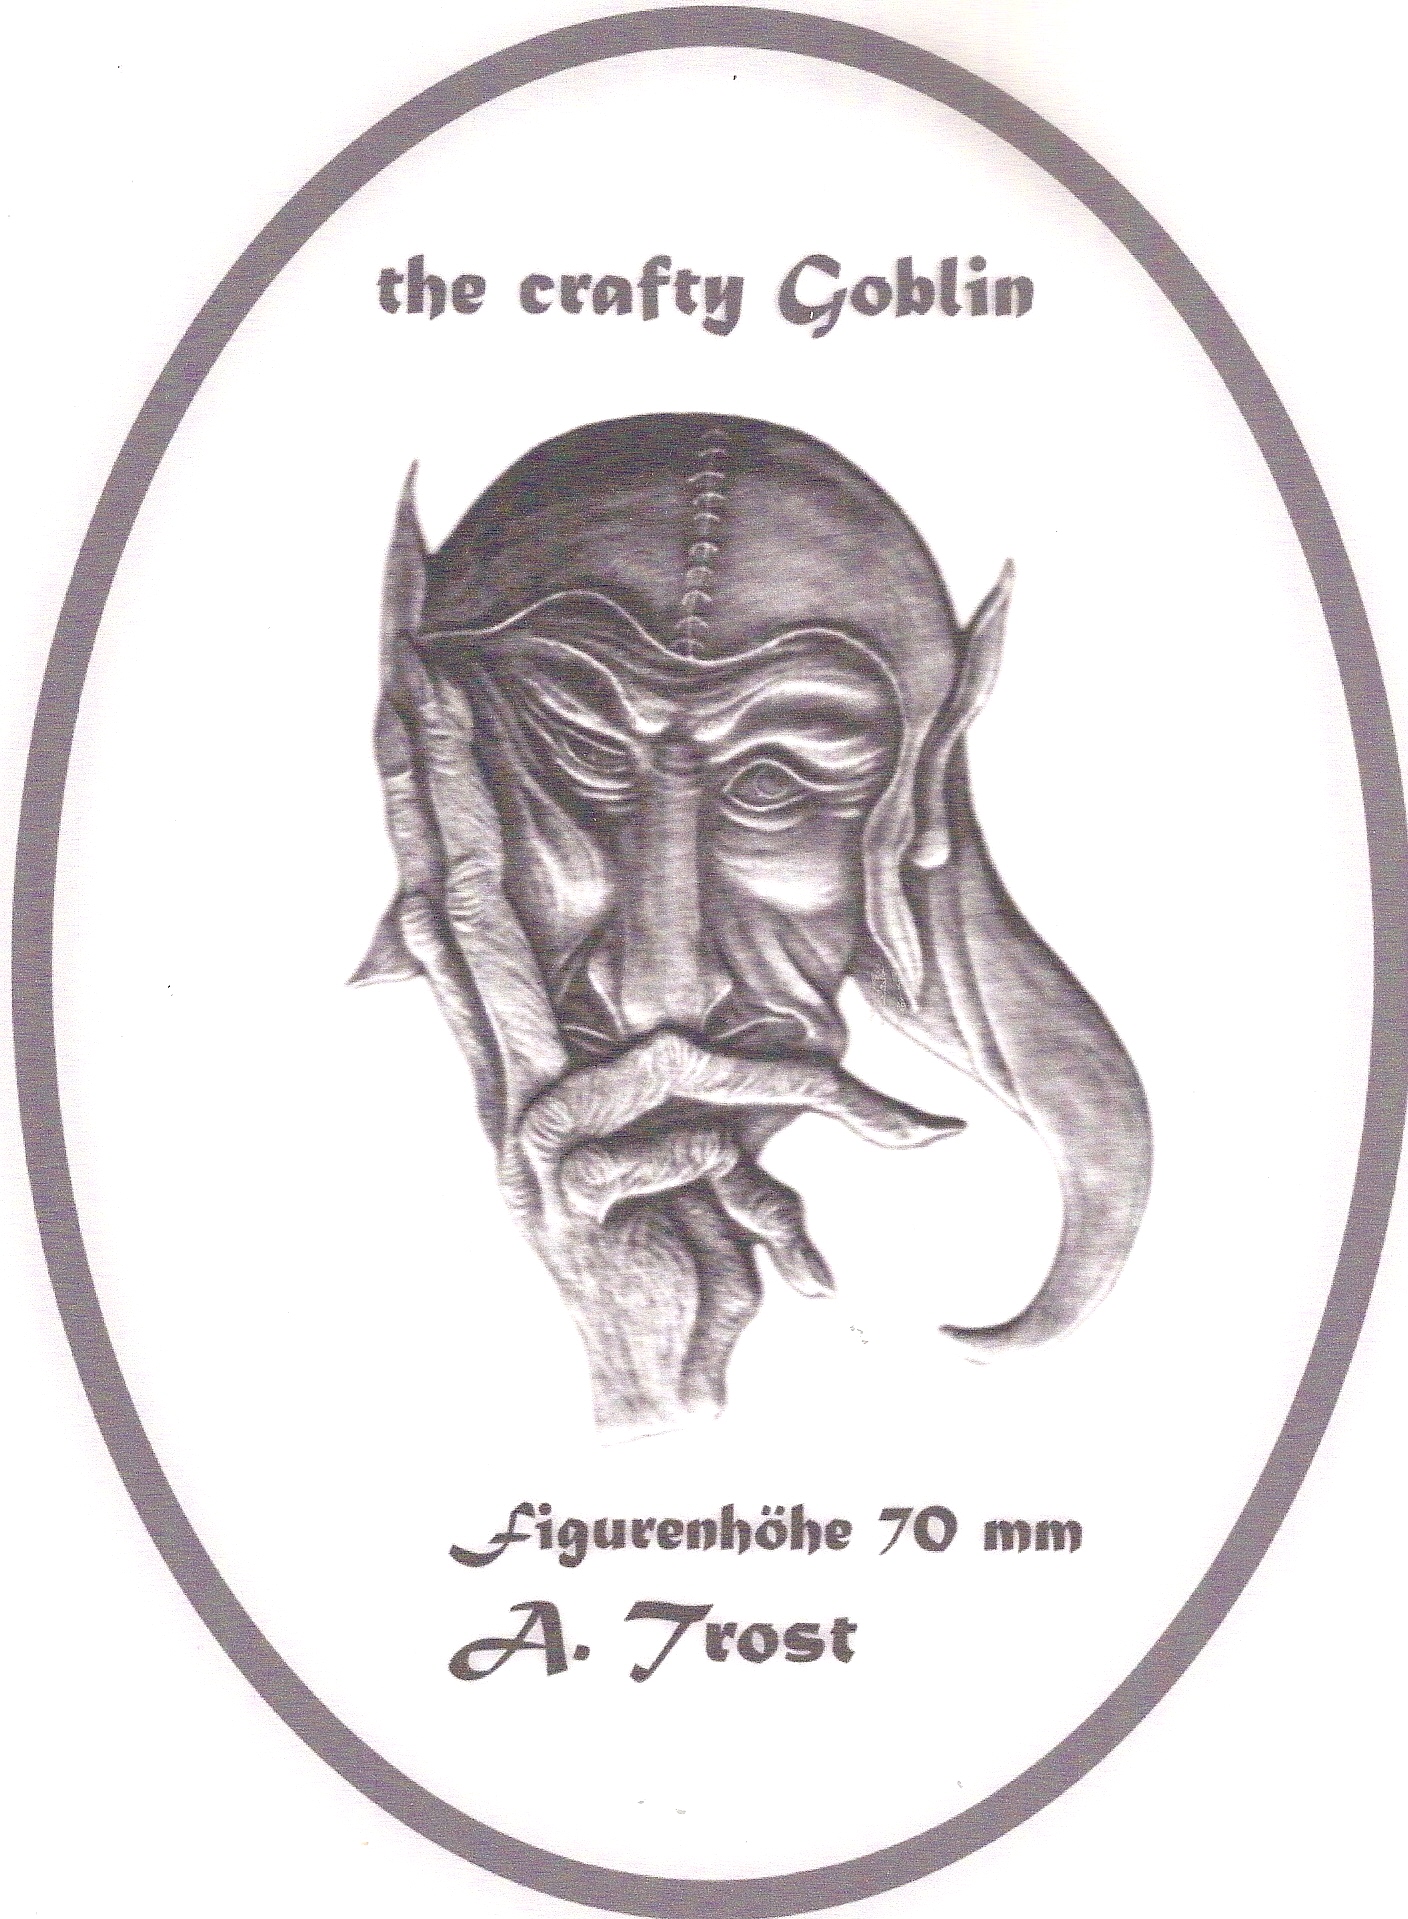 The Crafty Goblin